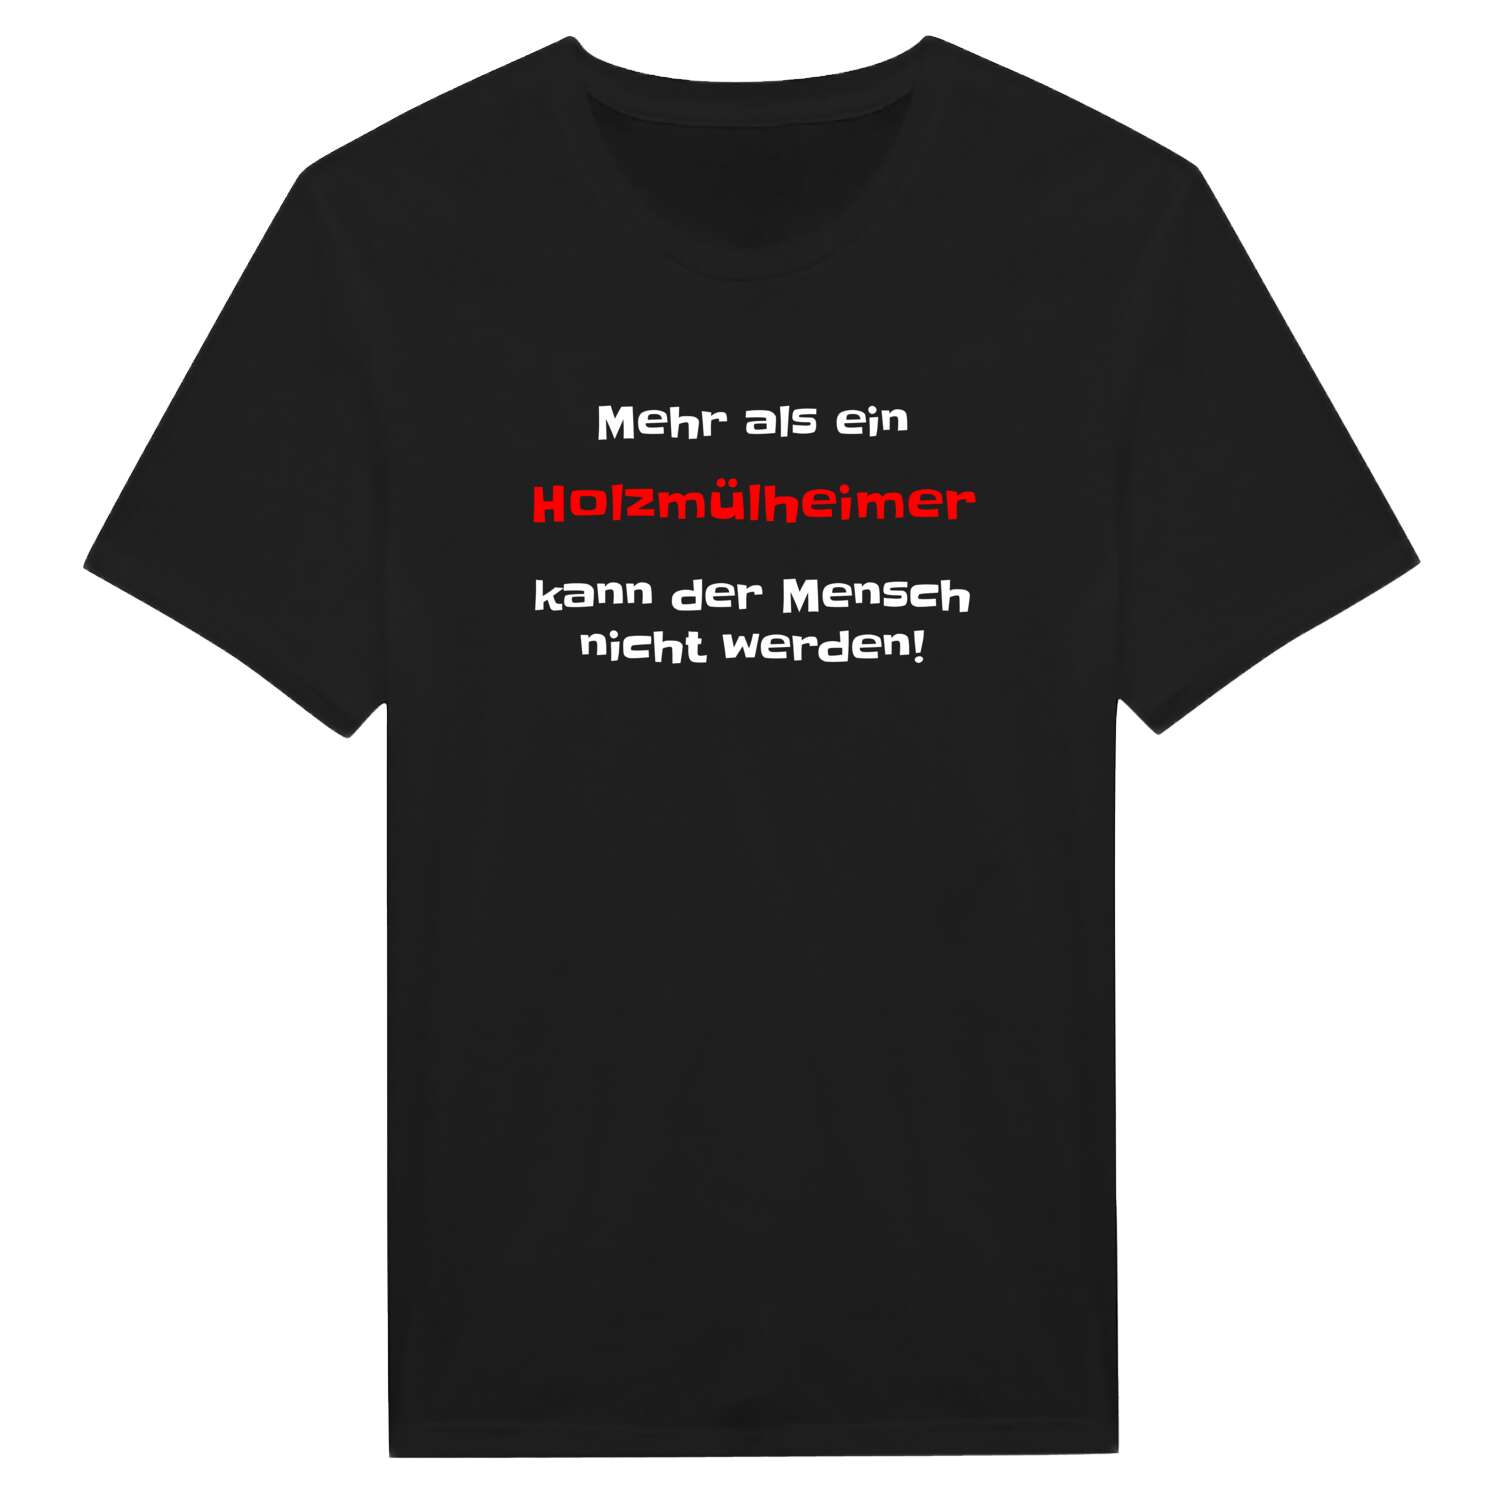 Holzmülheim T-Shirt »Mehr als ein«